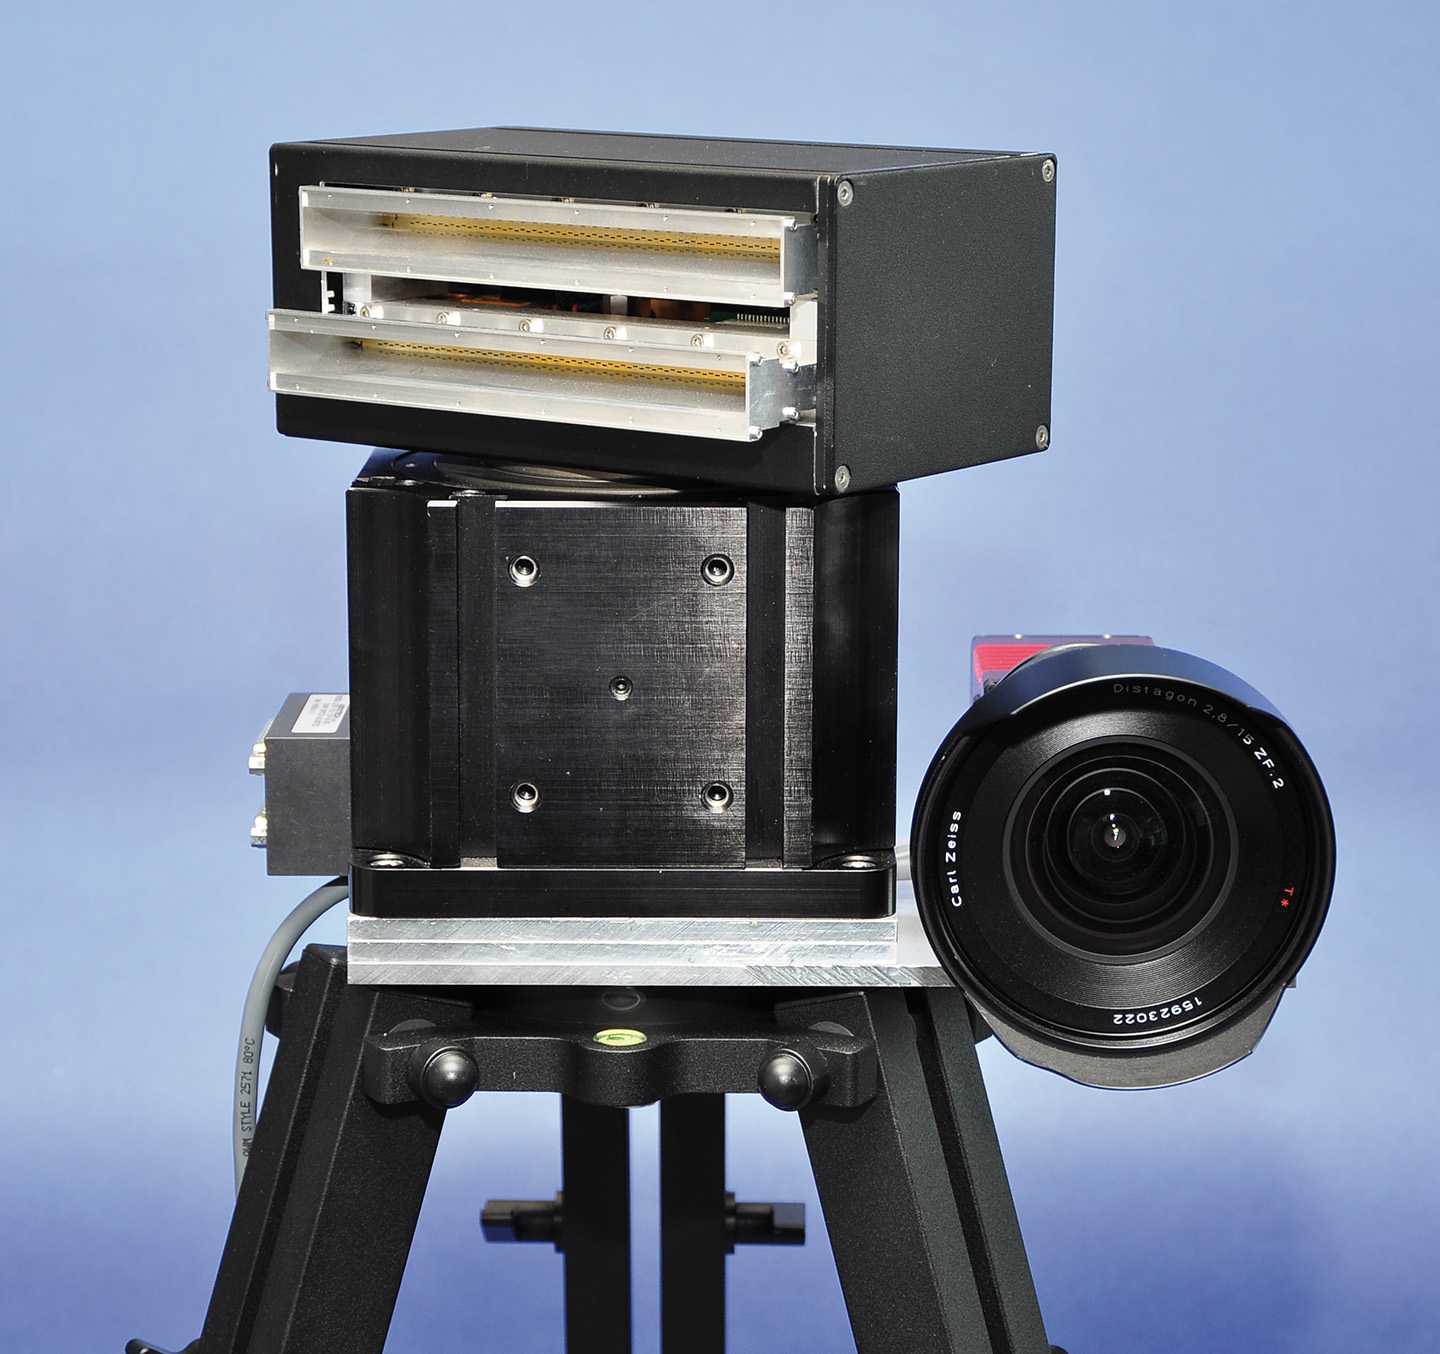 Mechanisch scannendes SSRS (Scanning Surveillance Radar System) mit optischer Kamera. Der rotierende Sensor scannt mit einem Öffnungswinkel von 1,8° in Azimut-Richtung.